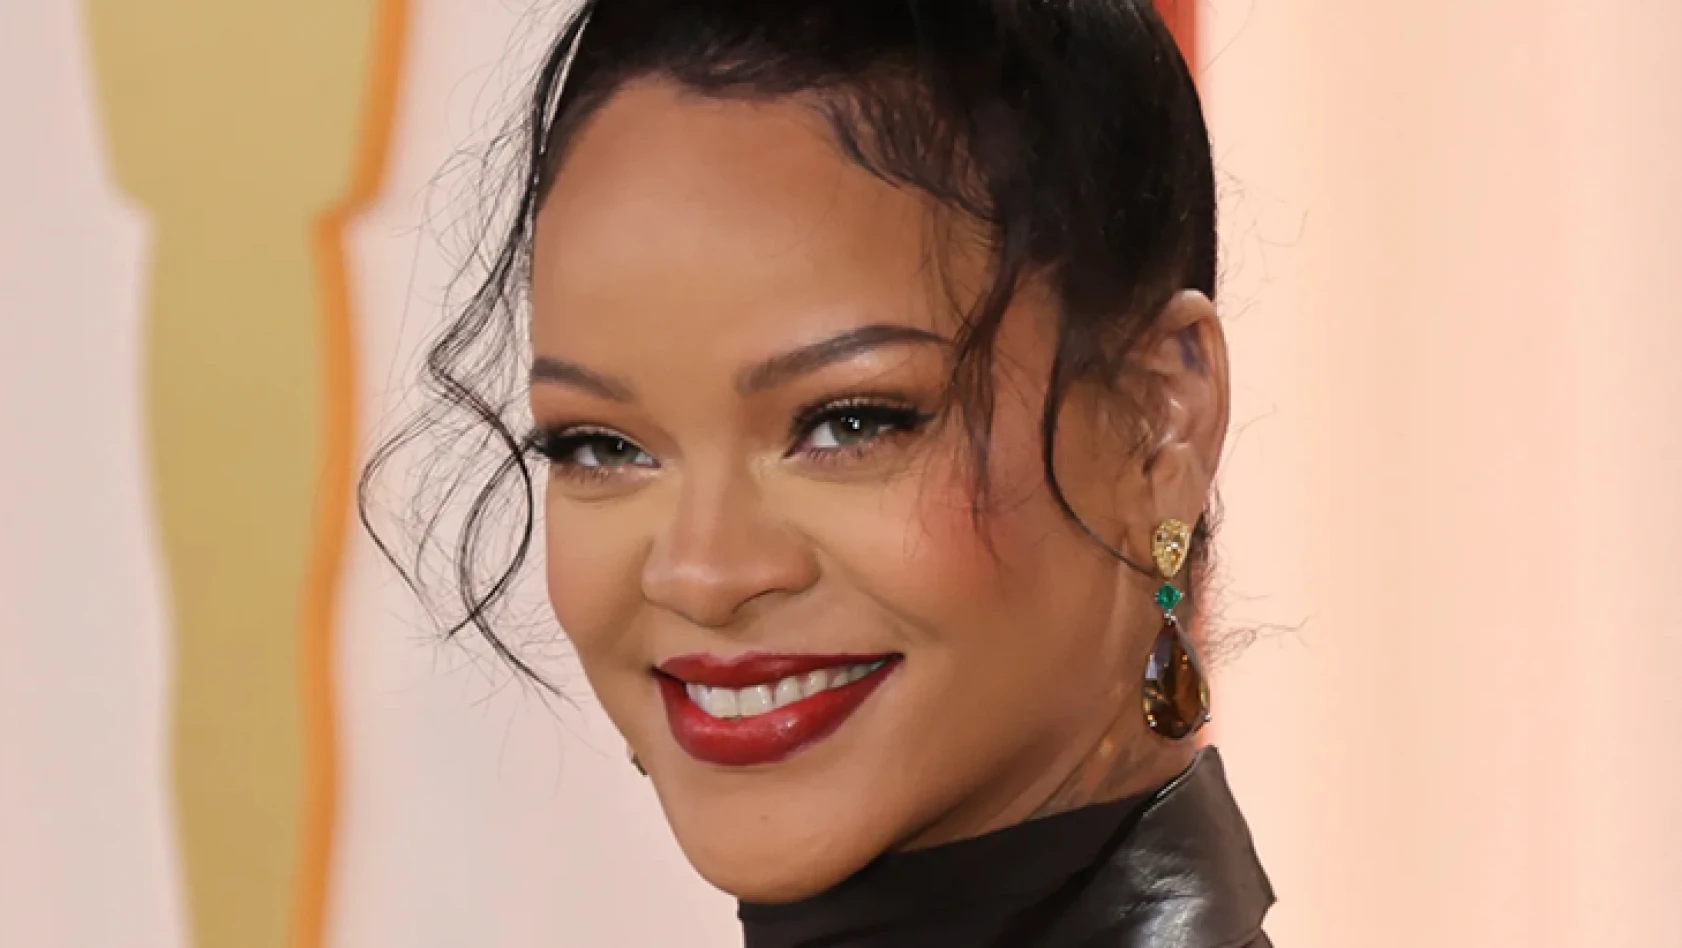 İkinci çocuğuna hamile olan Rihanna, ilk çocuğunun ismini açıkladı